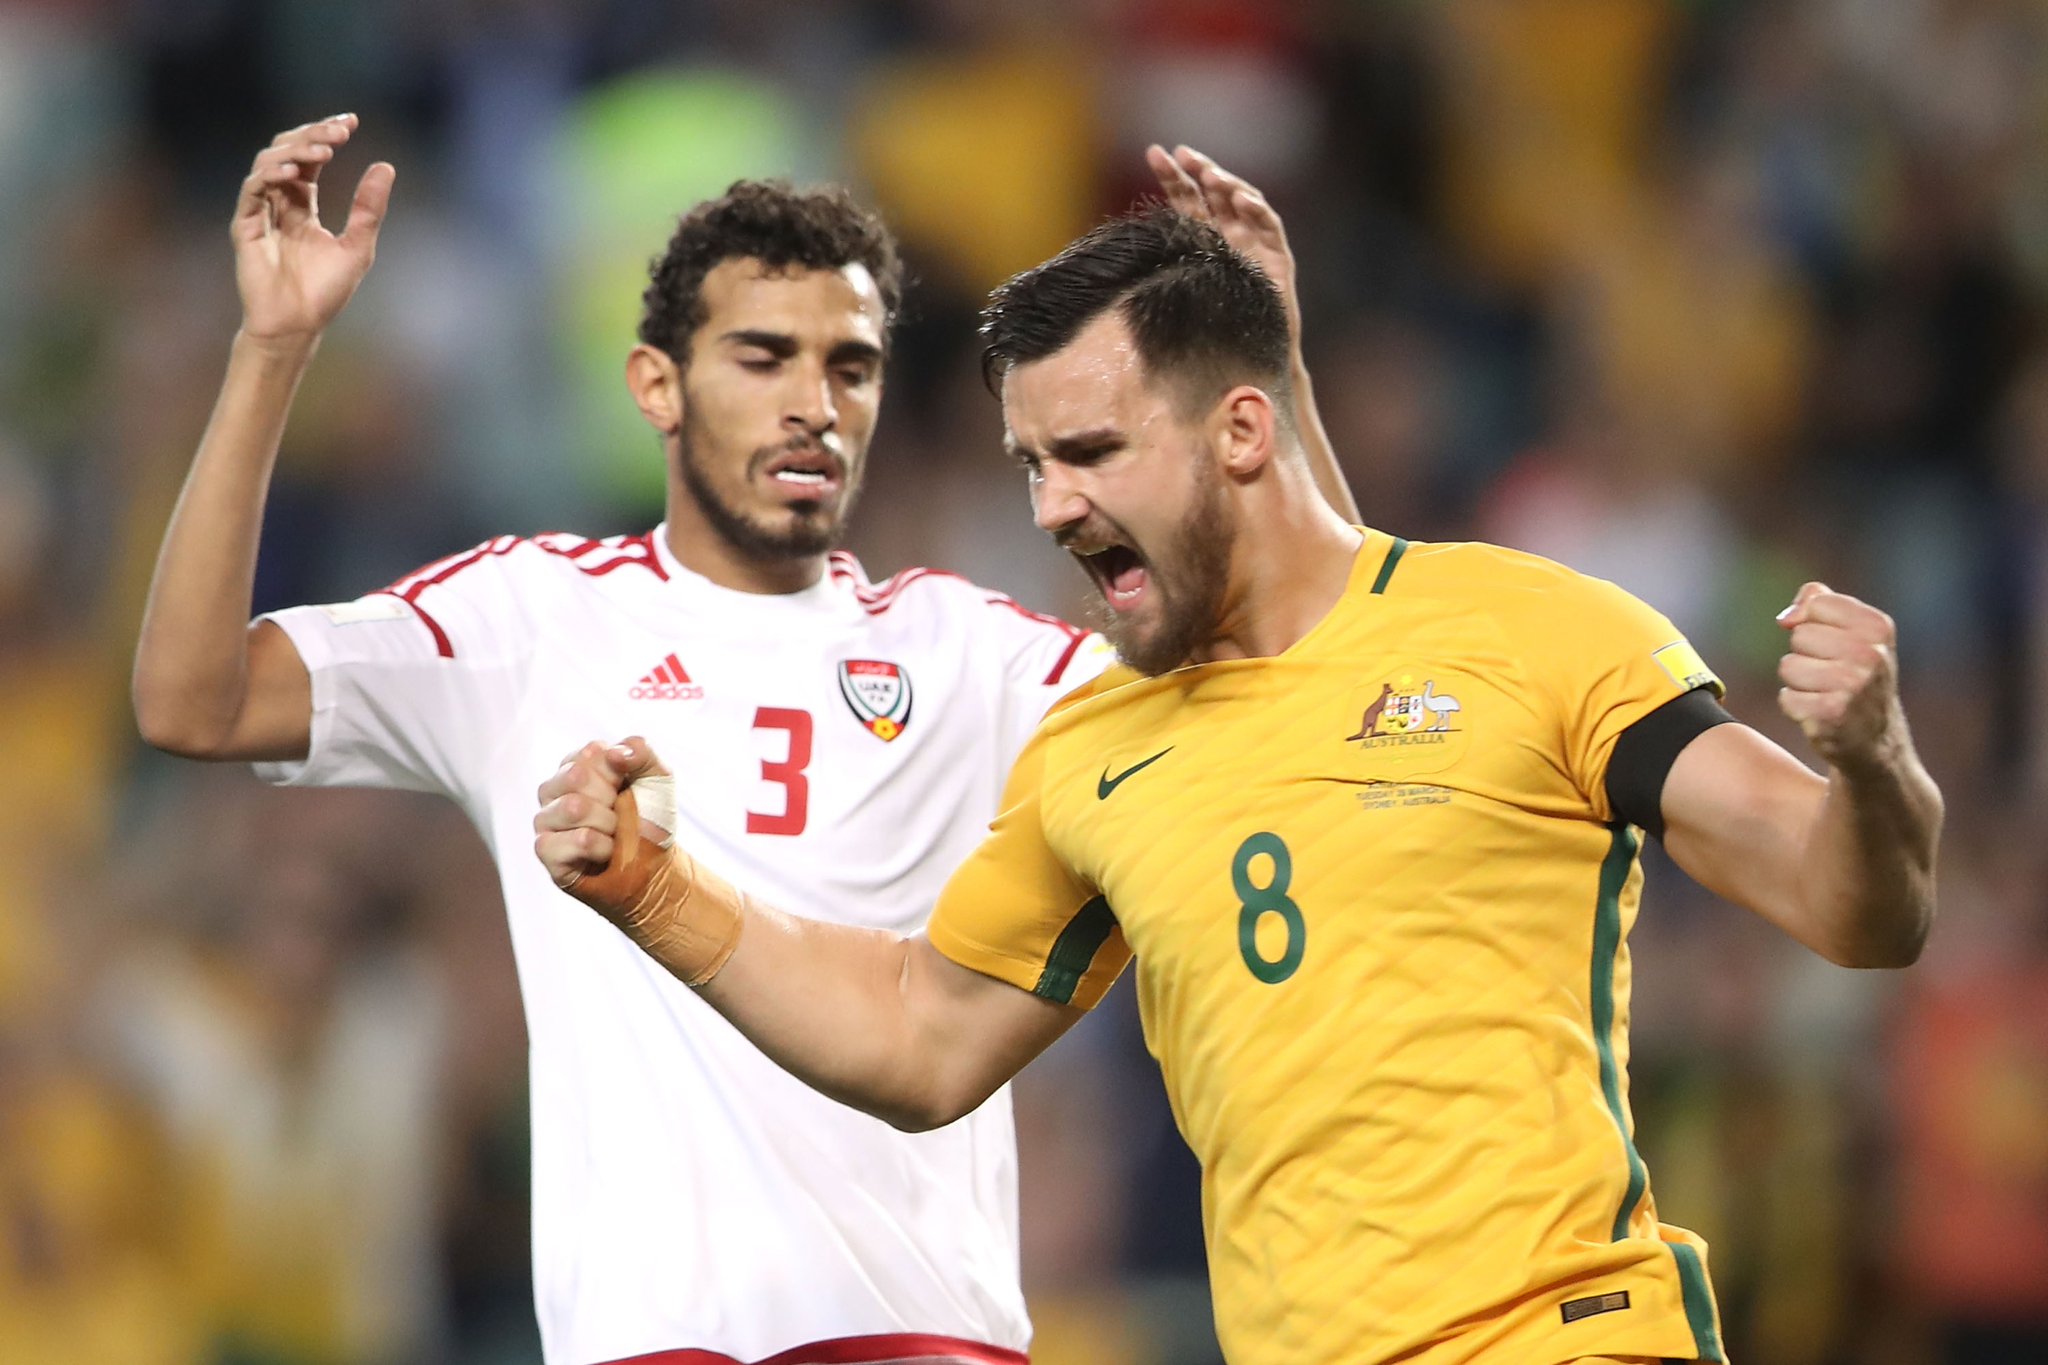 أستراليا تهزم الإمارات وتقلص فرصها في التأهل المباشر لمونديال 2018